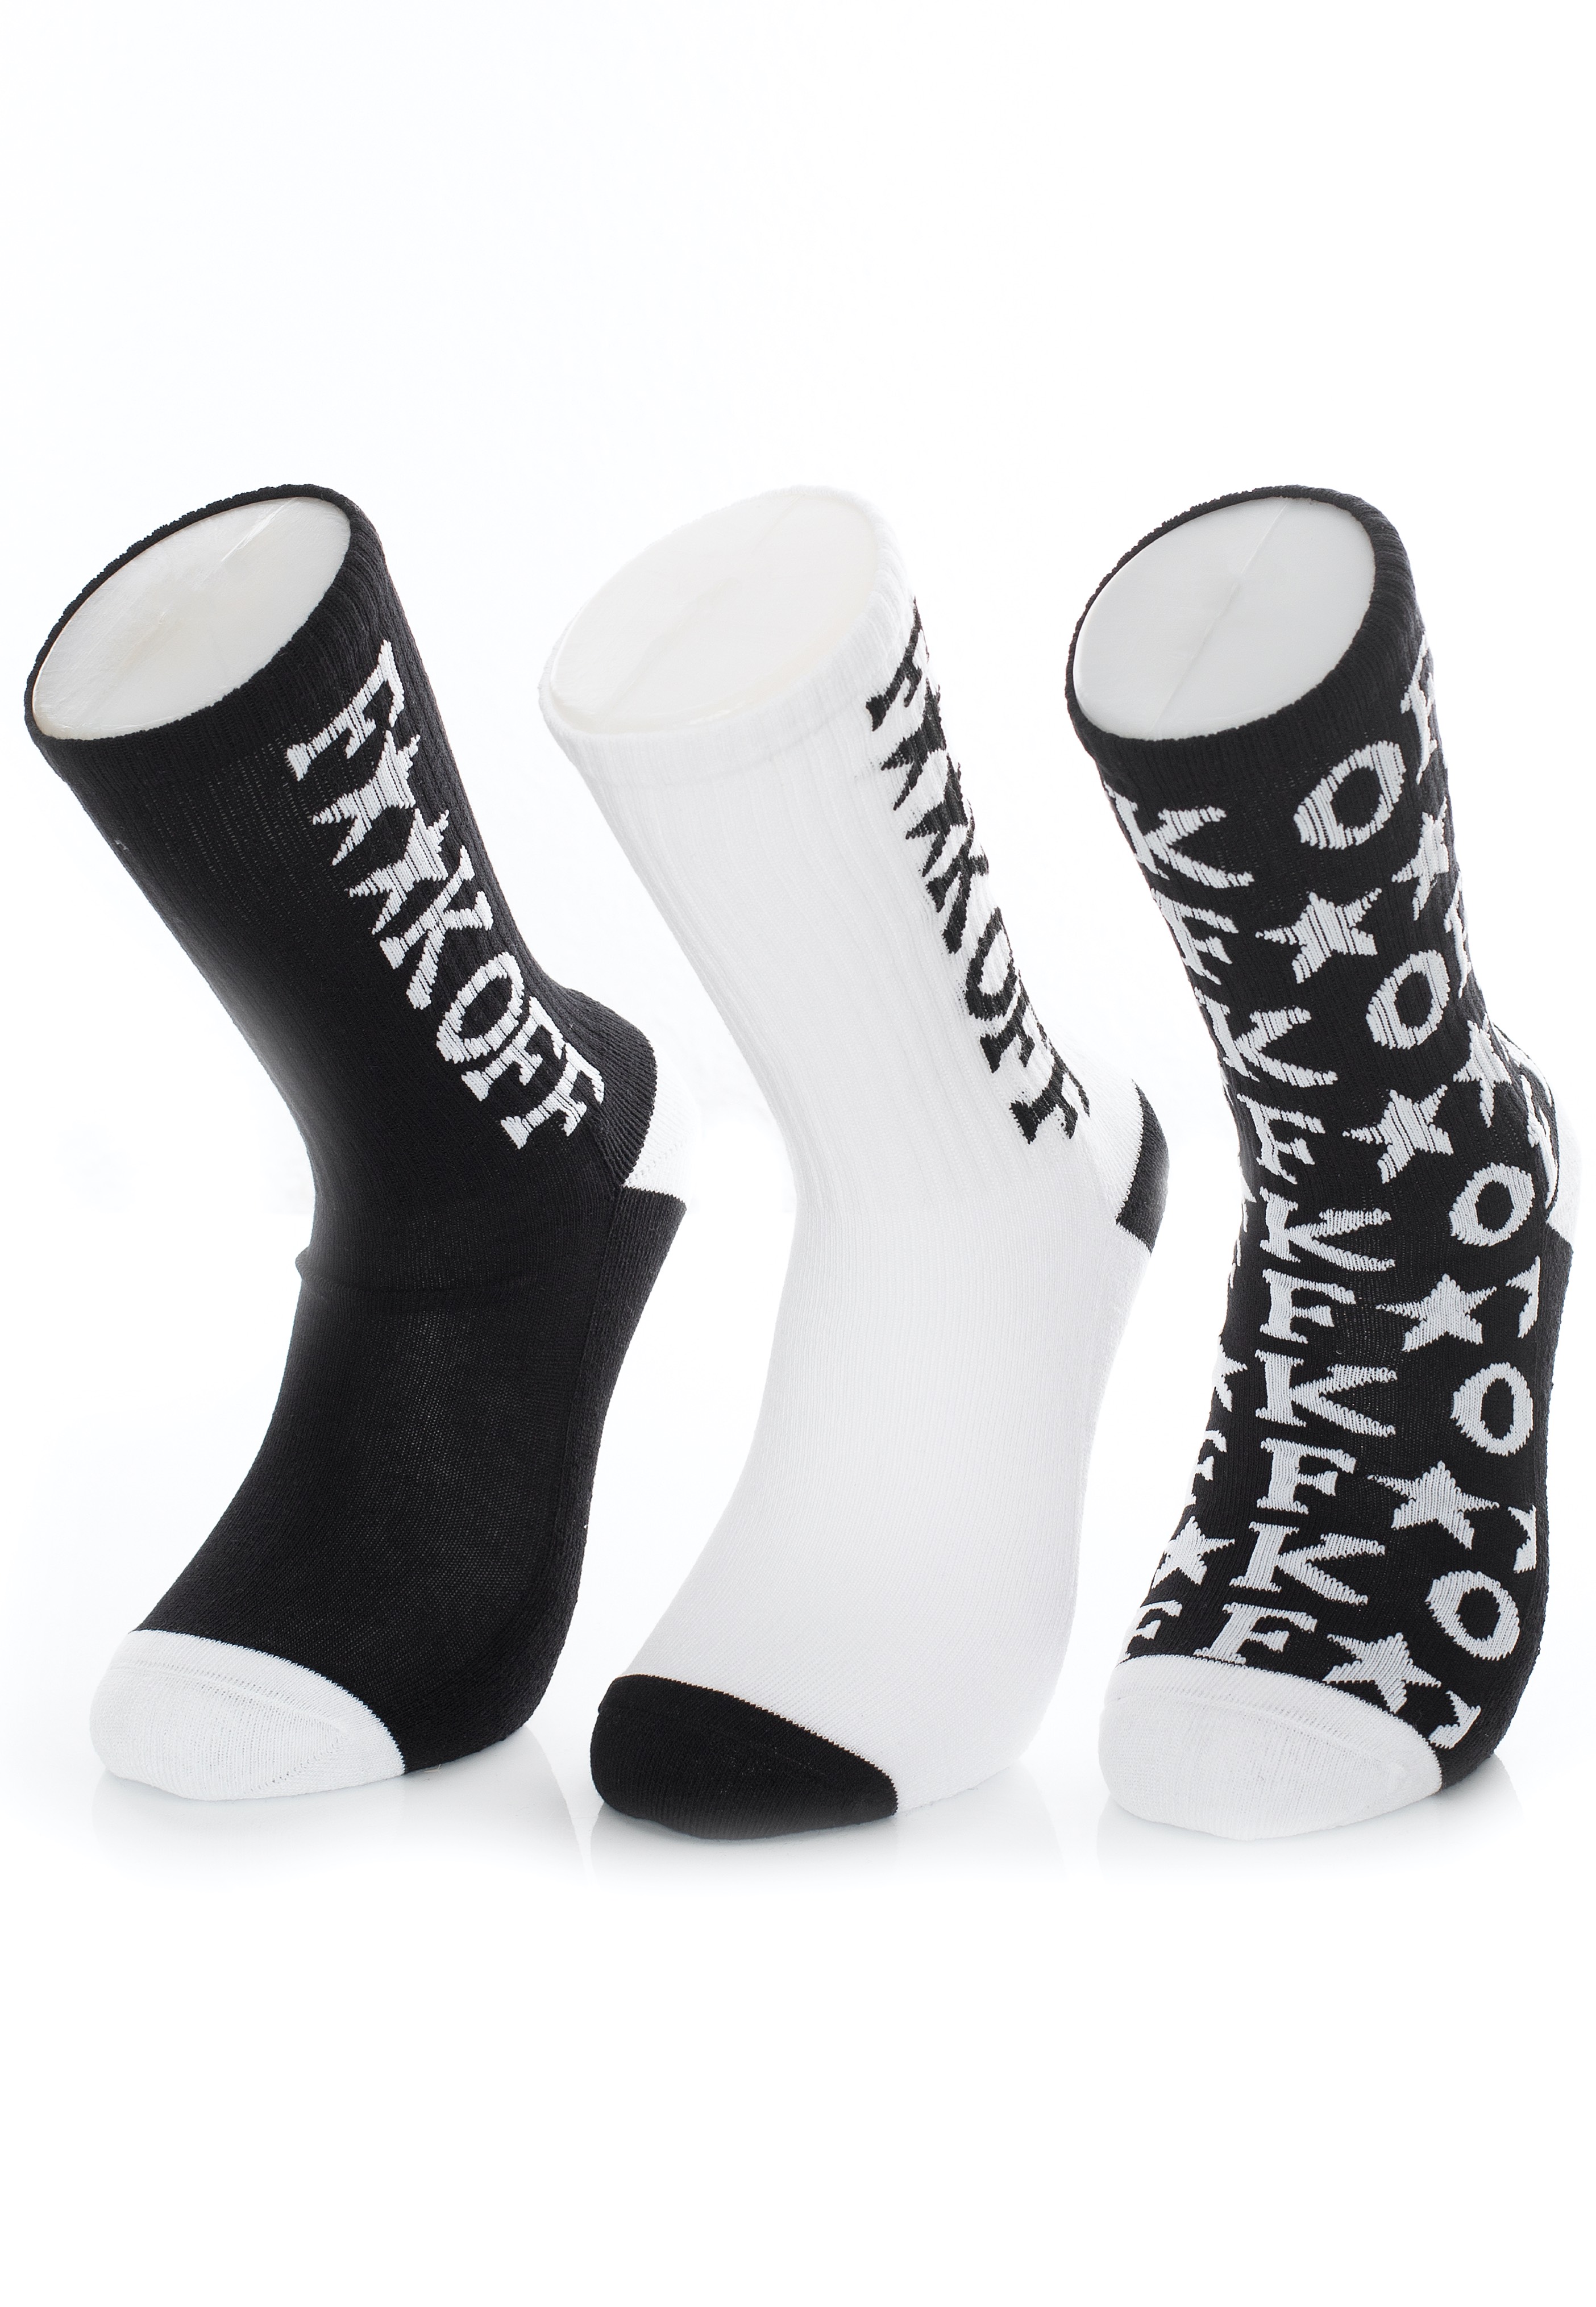 Mister Tee - Fuck OFF Allover Pack Of 3 Black/White - Socken